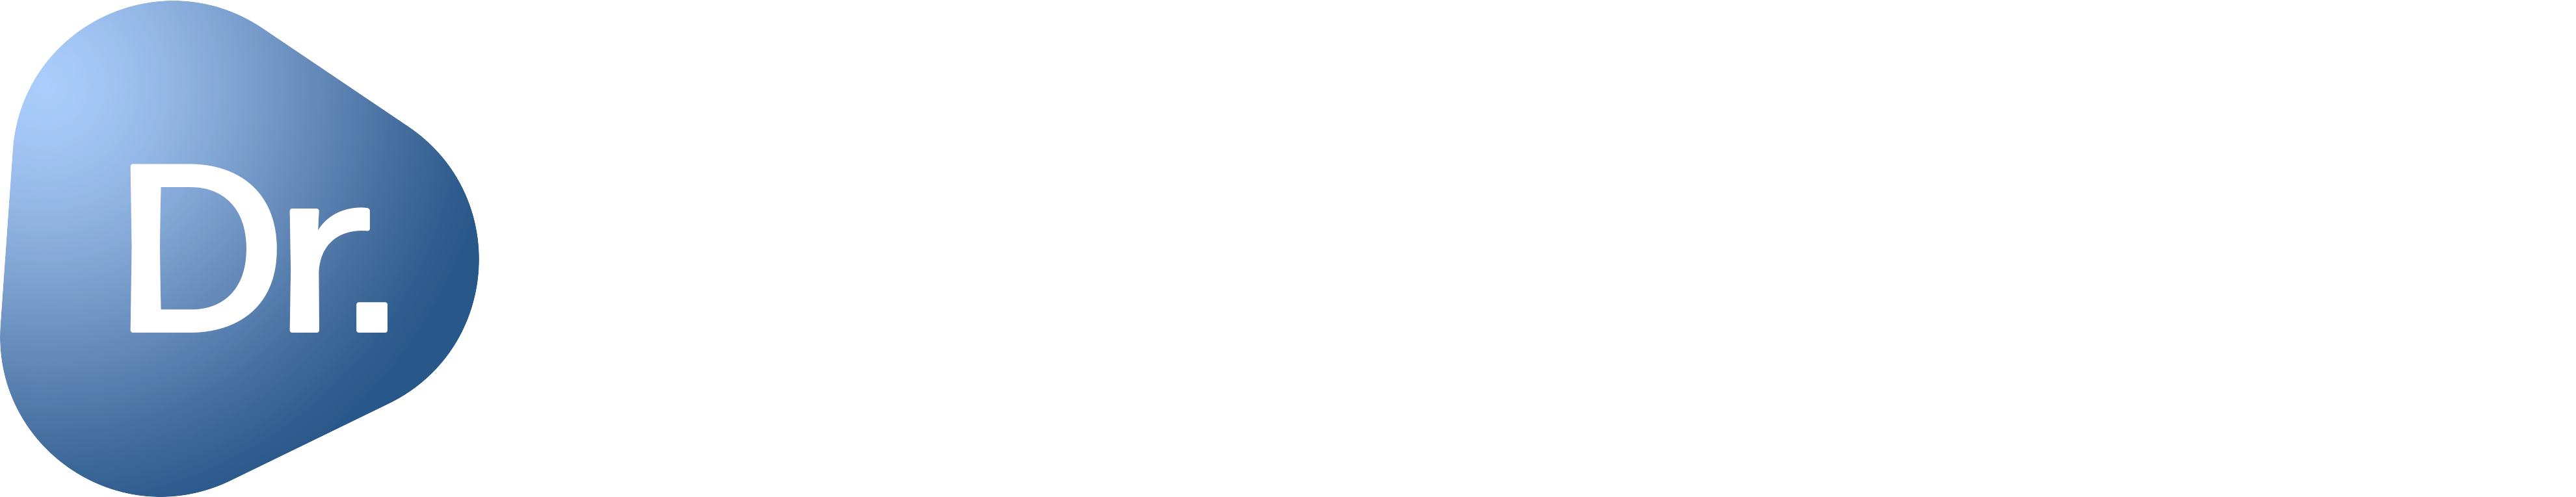 dr gathe name logo – white